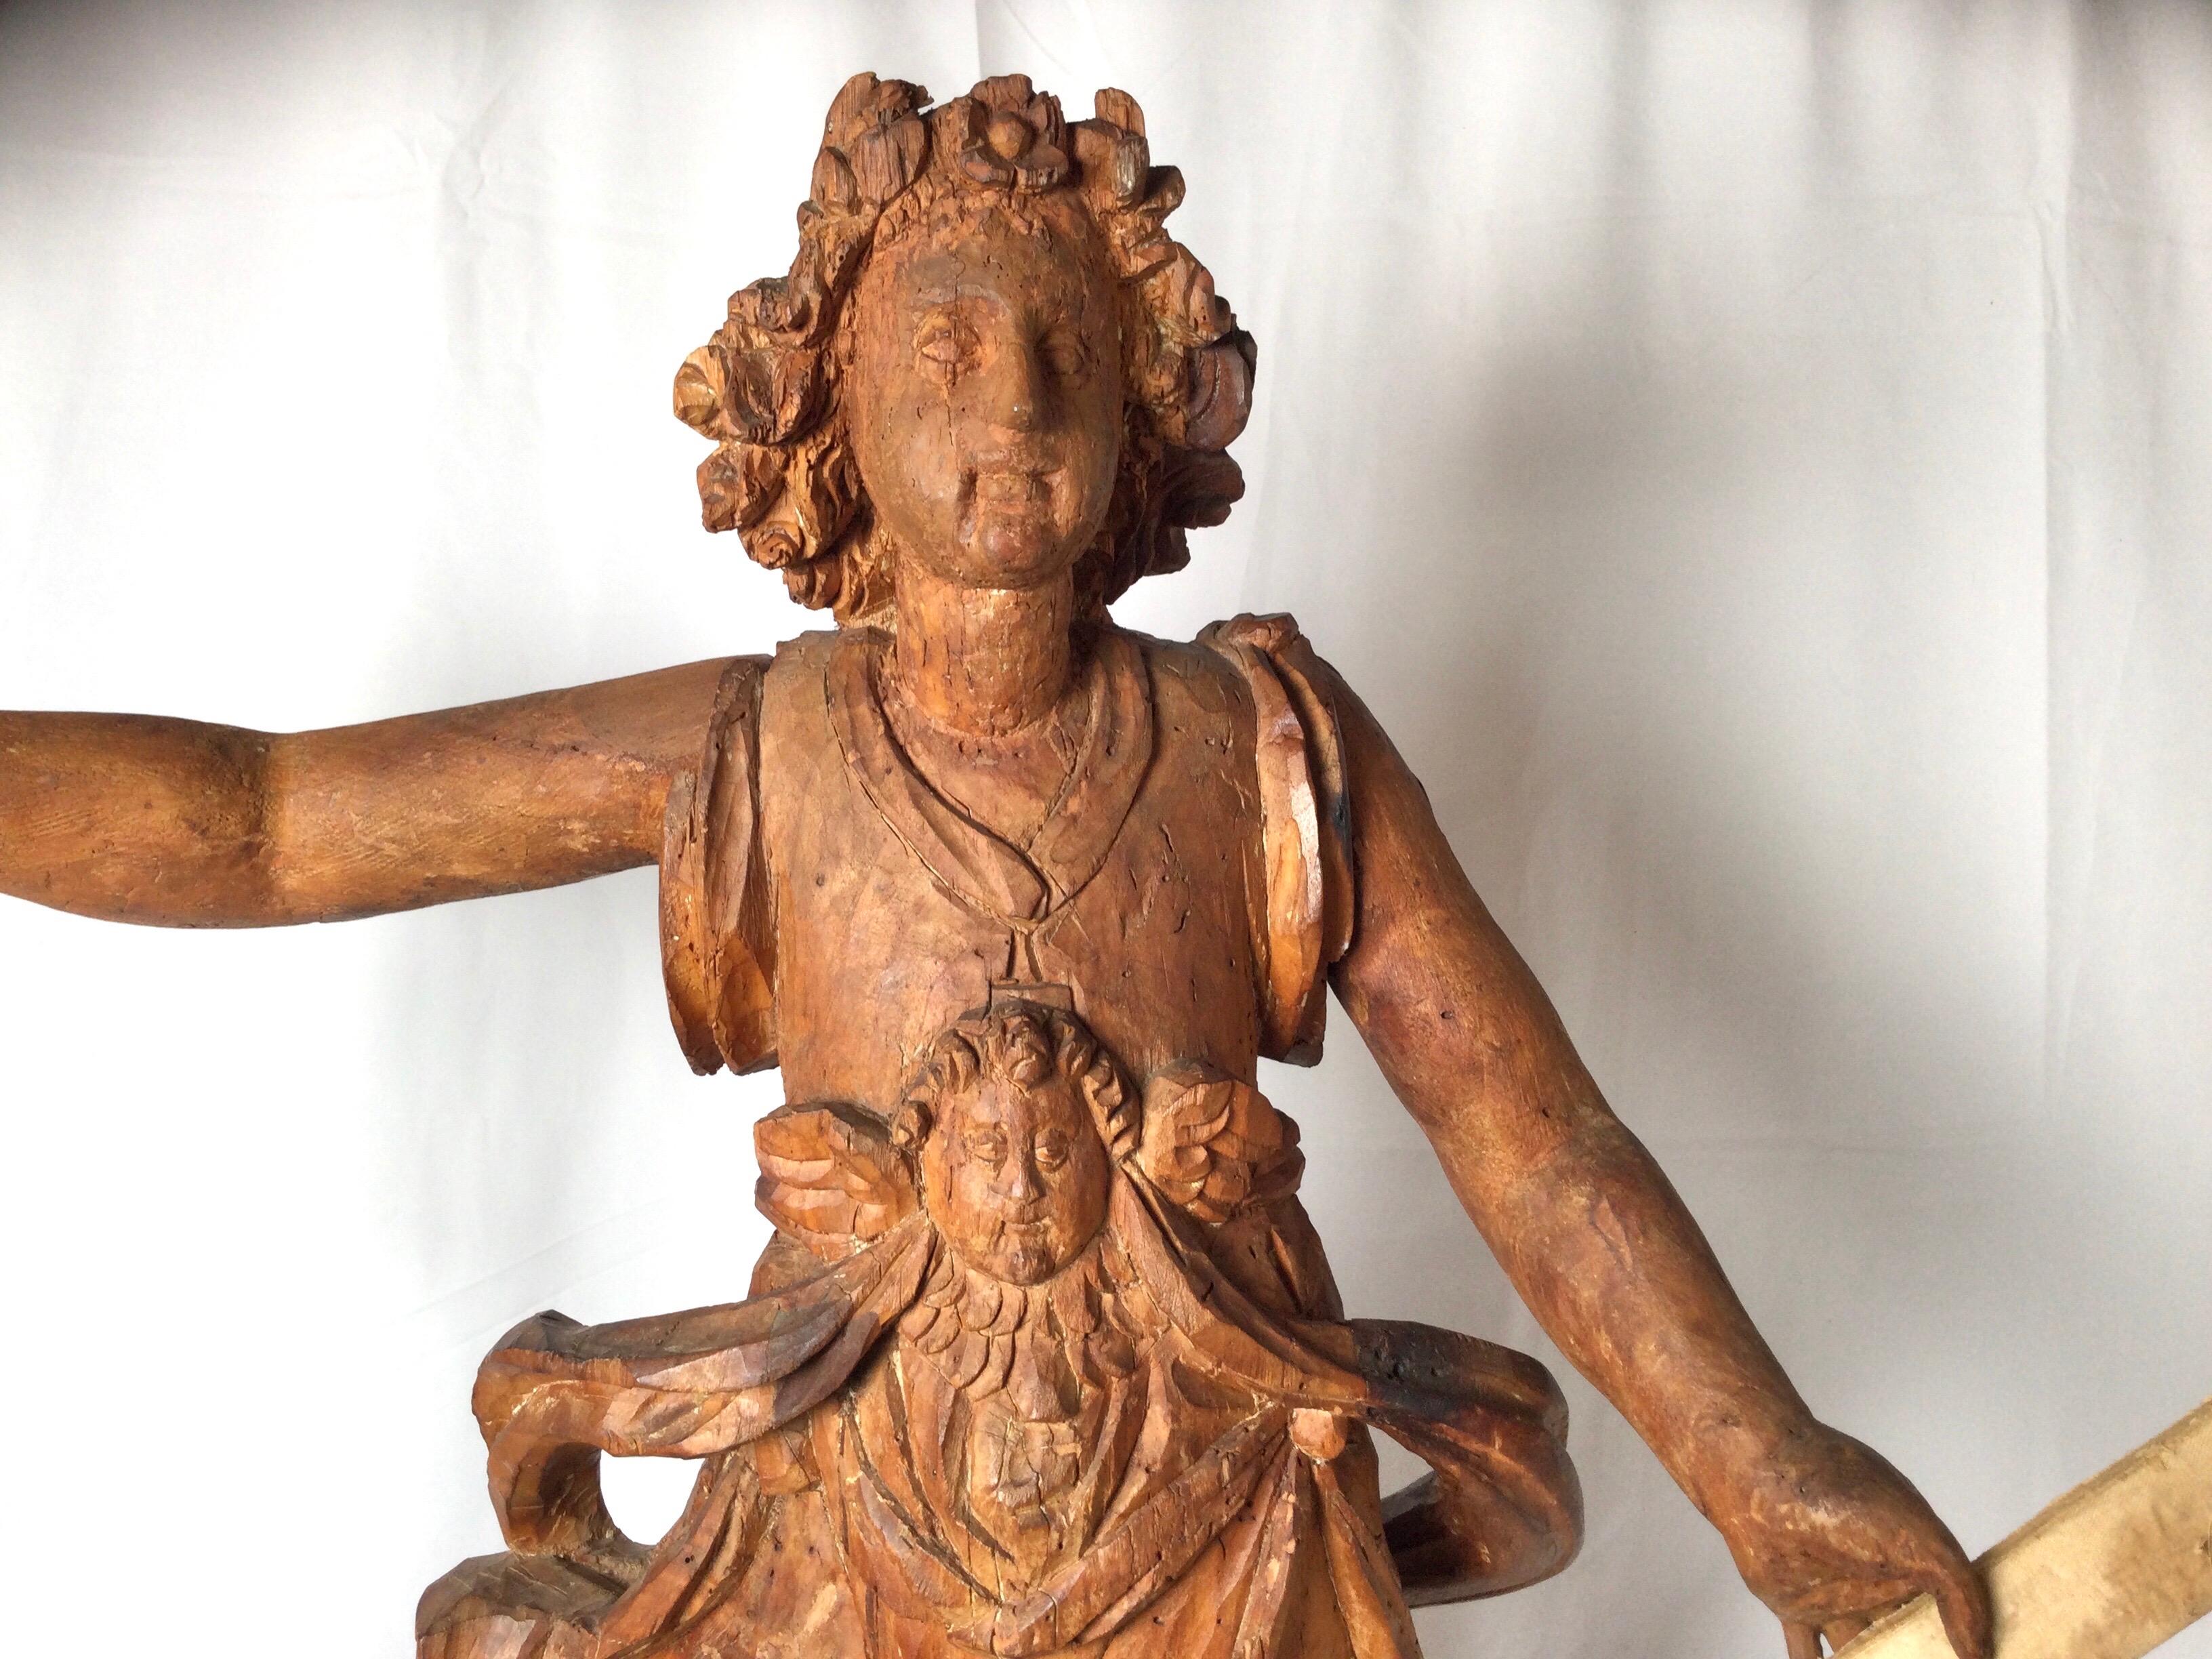 Außergewöhnliche geschnitzte Holzstatue des Heiligen Micheal aus dem 17. Jahrhundert, die wahrscheinlich aus einer Kirche oder einem Pfarrhaus stammt. Natürlich patiniert und originales Finish von einem Meisterschnitzer.
Abmessungen: 38